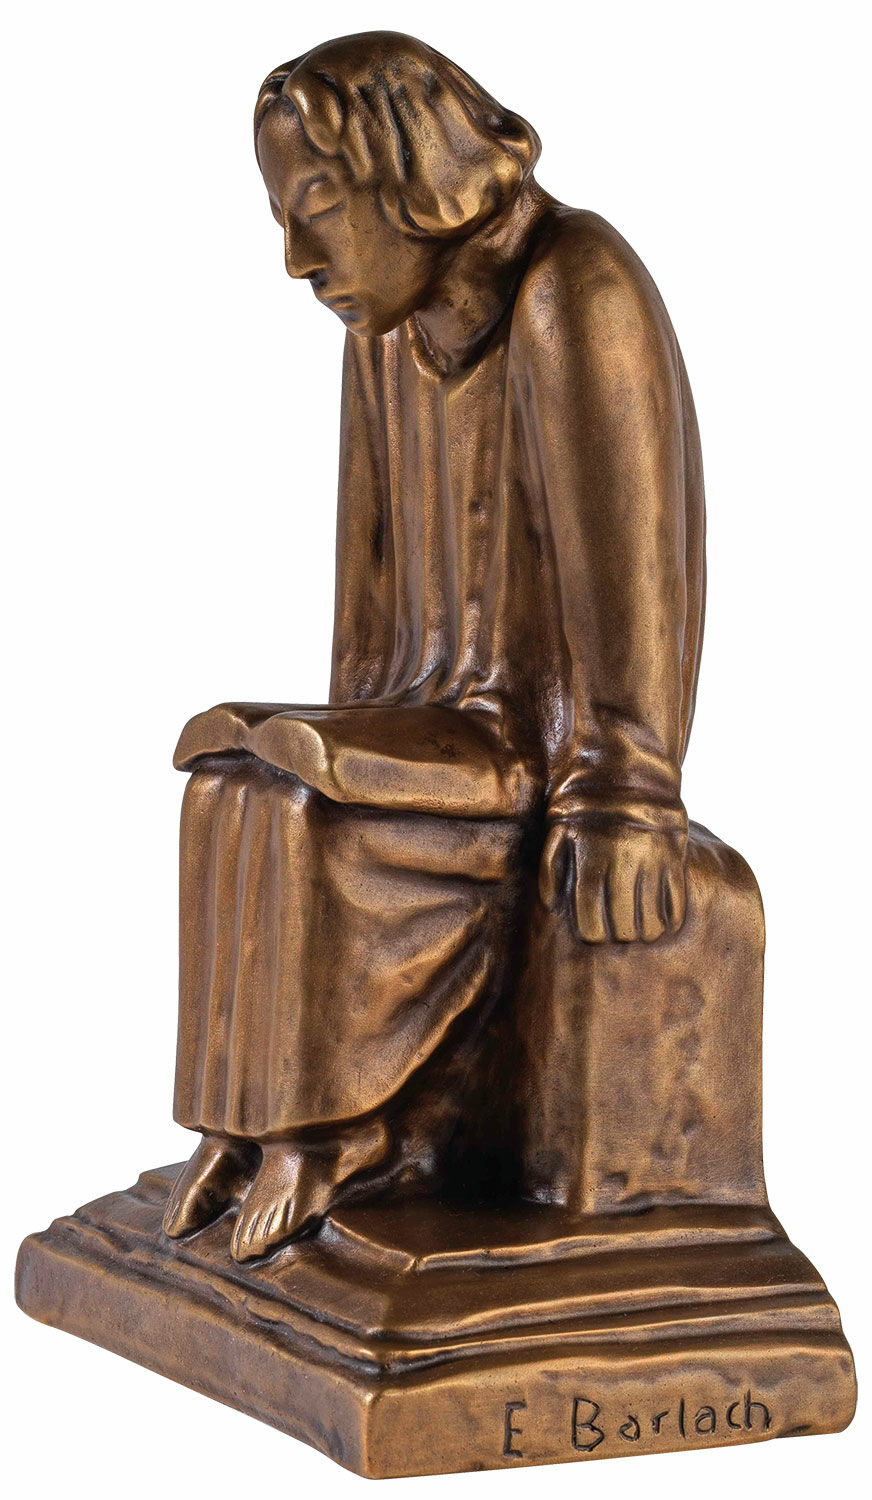 Skulptur "Läsande klosterelev" (1930), reduktion i brons von Ernst Barlach